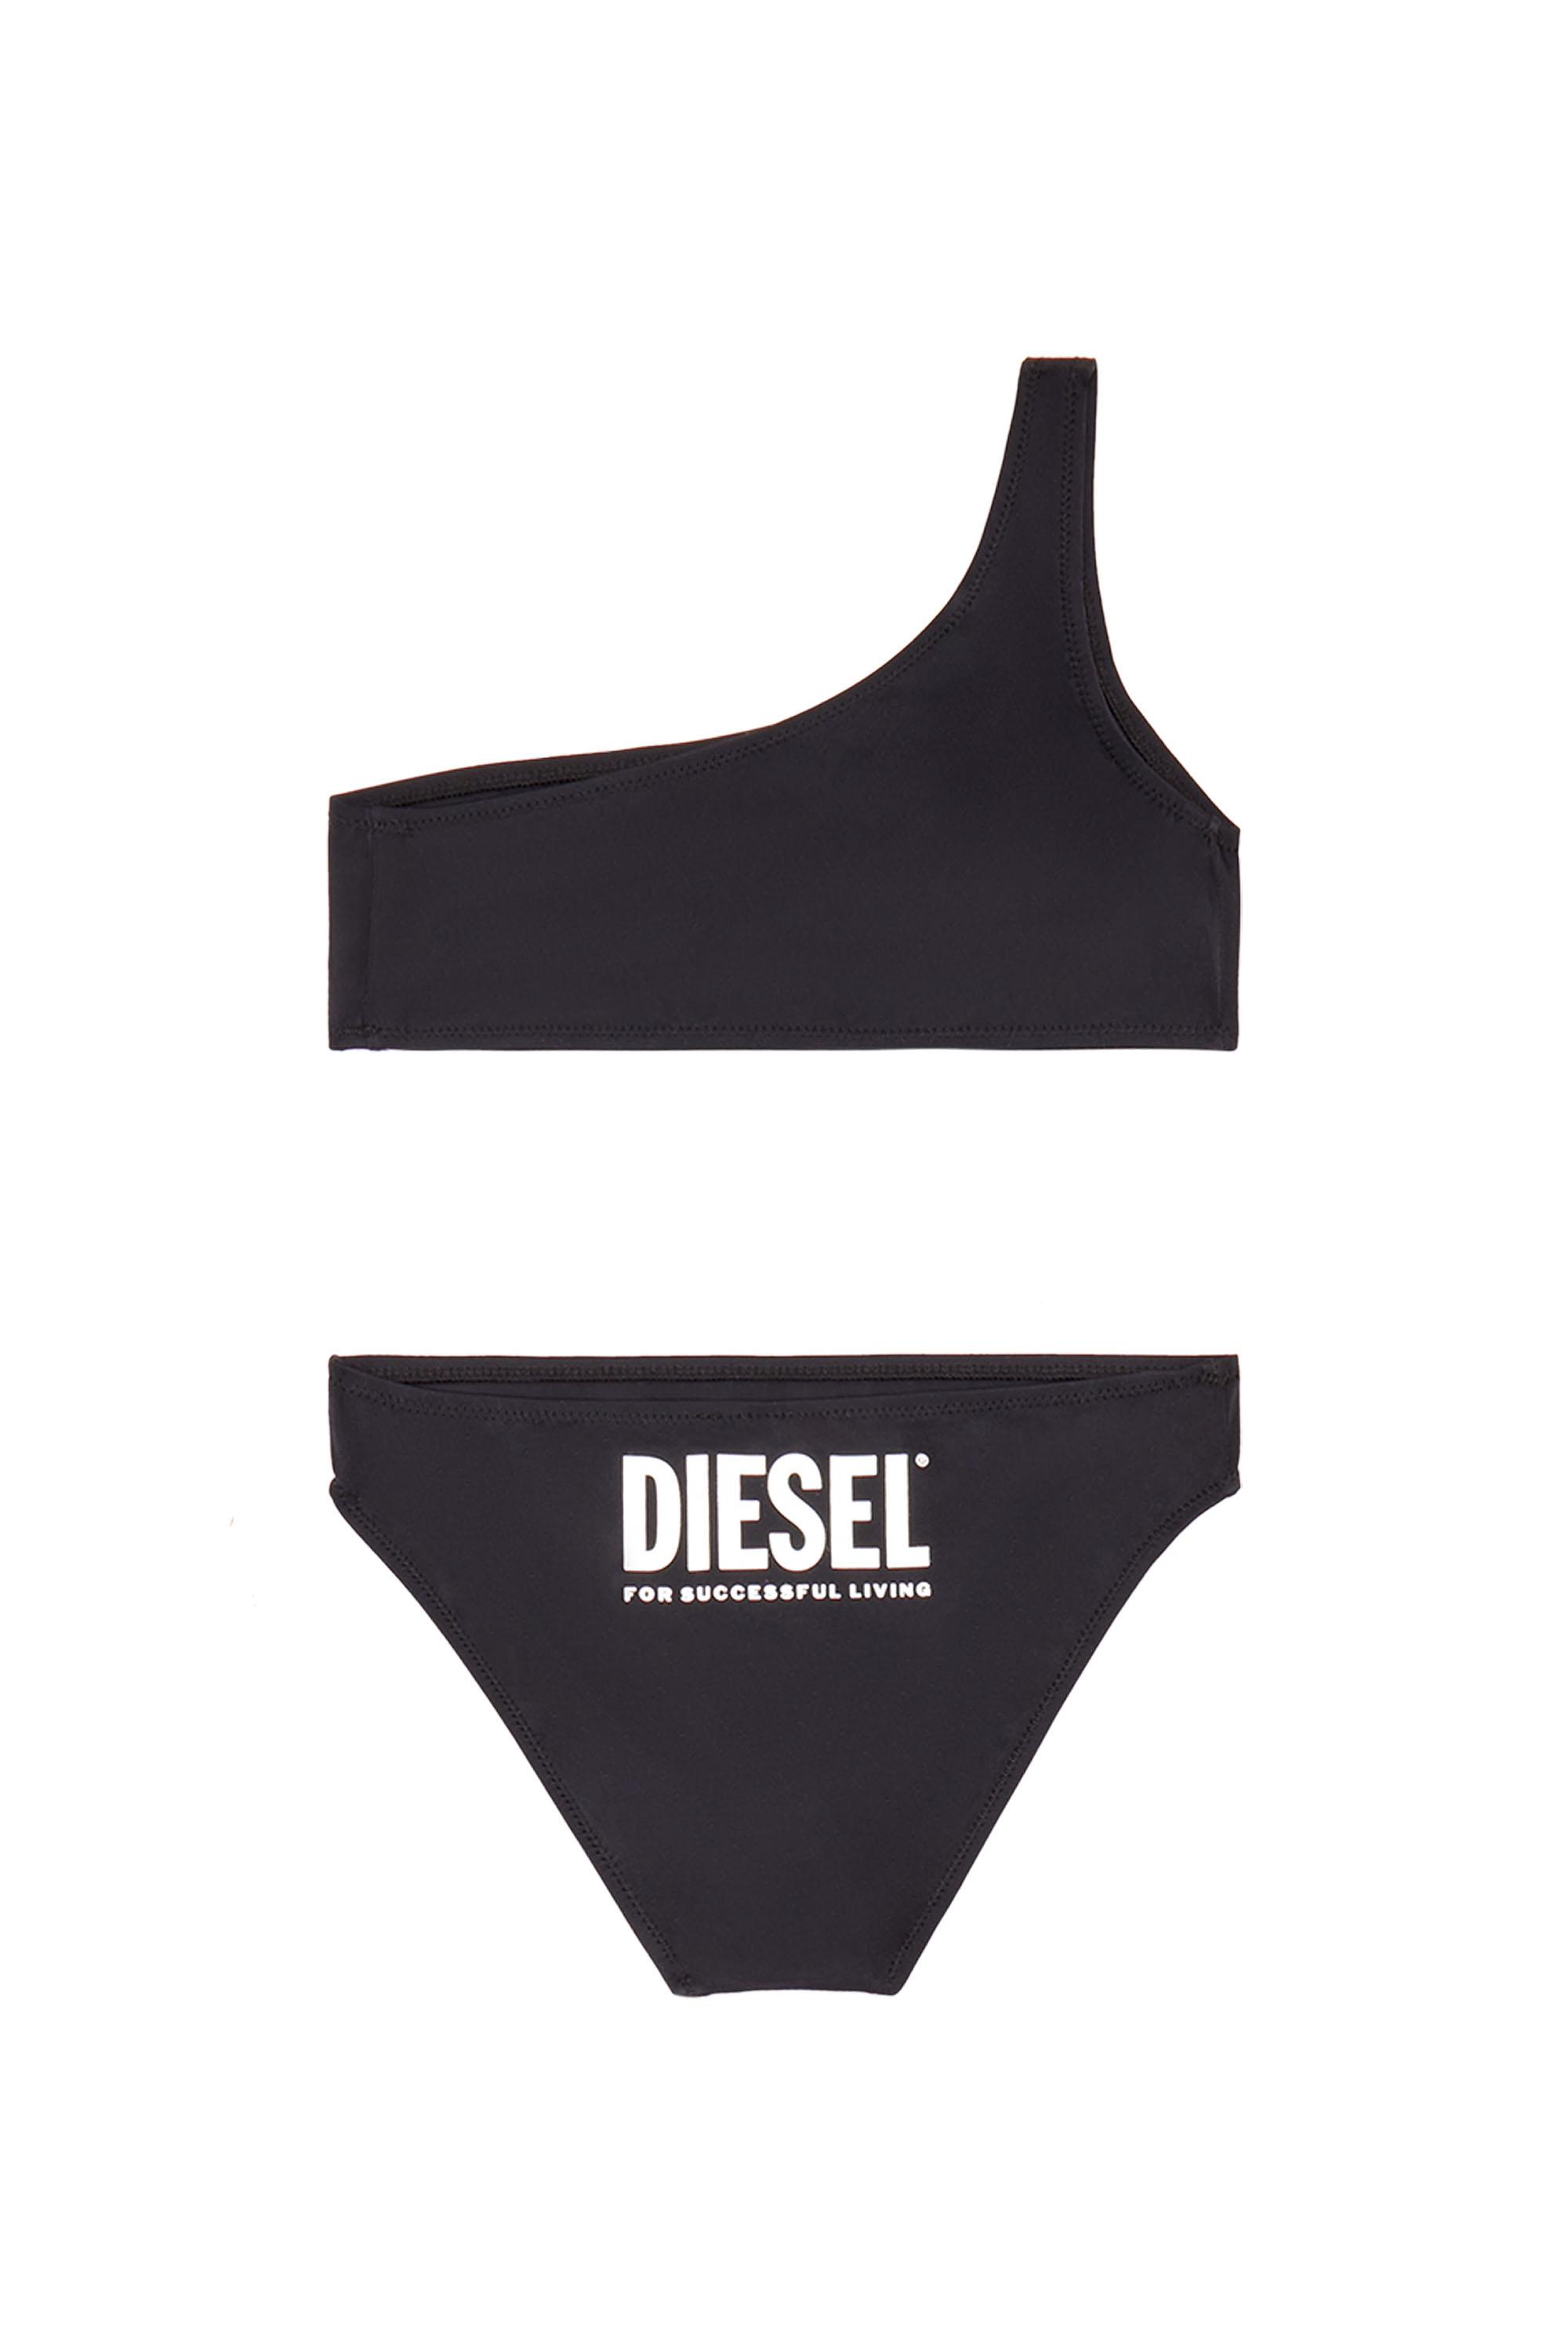 Diesel - MHOLDER, Black - Image 2